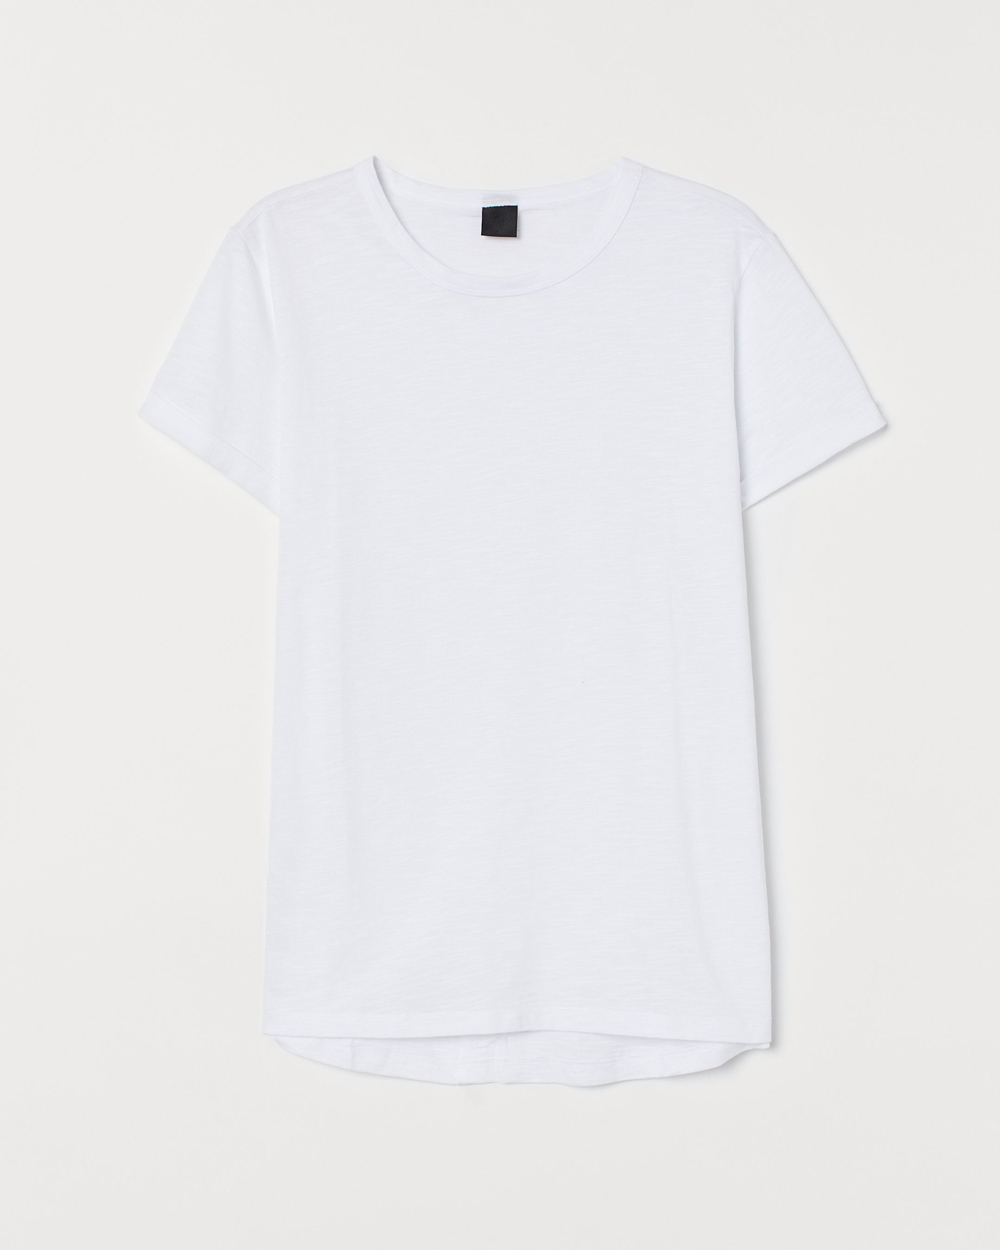 H&M muška bijela majica proljeće 2020 4